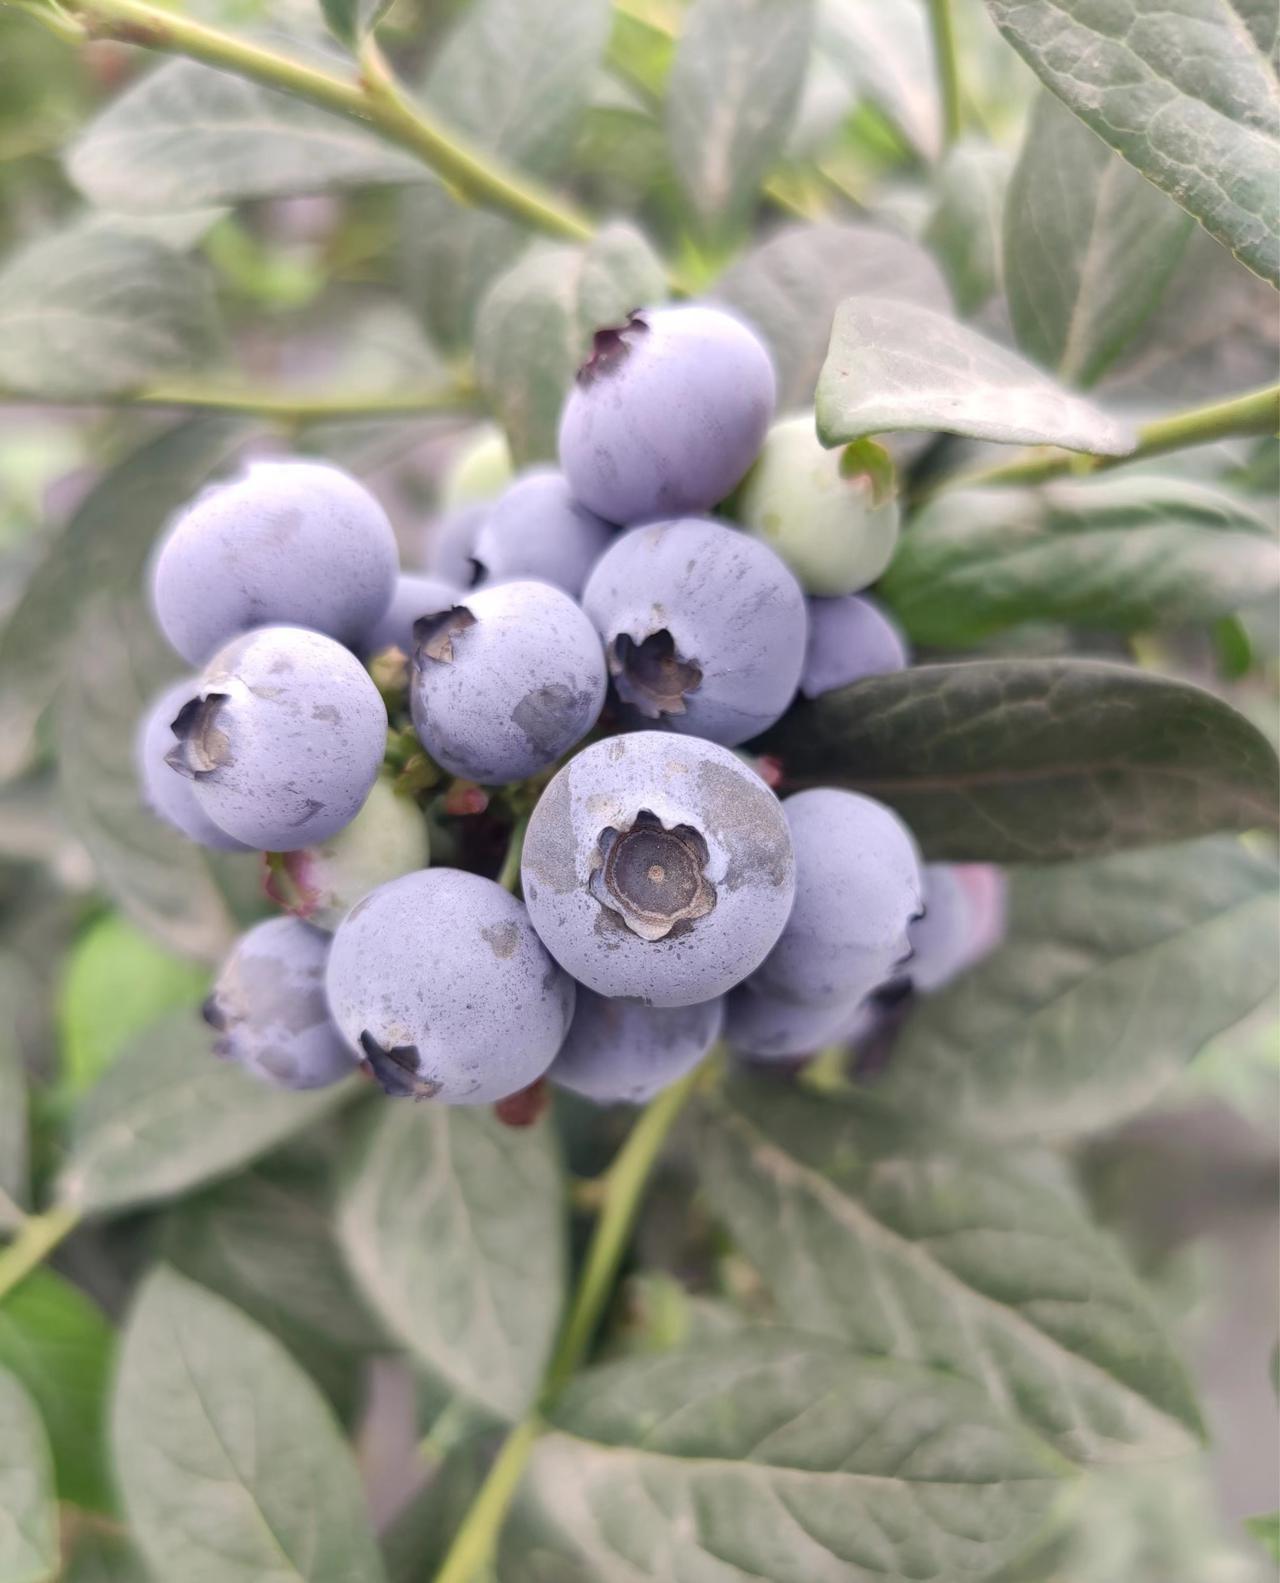 蓝莓.jpg